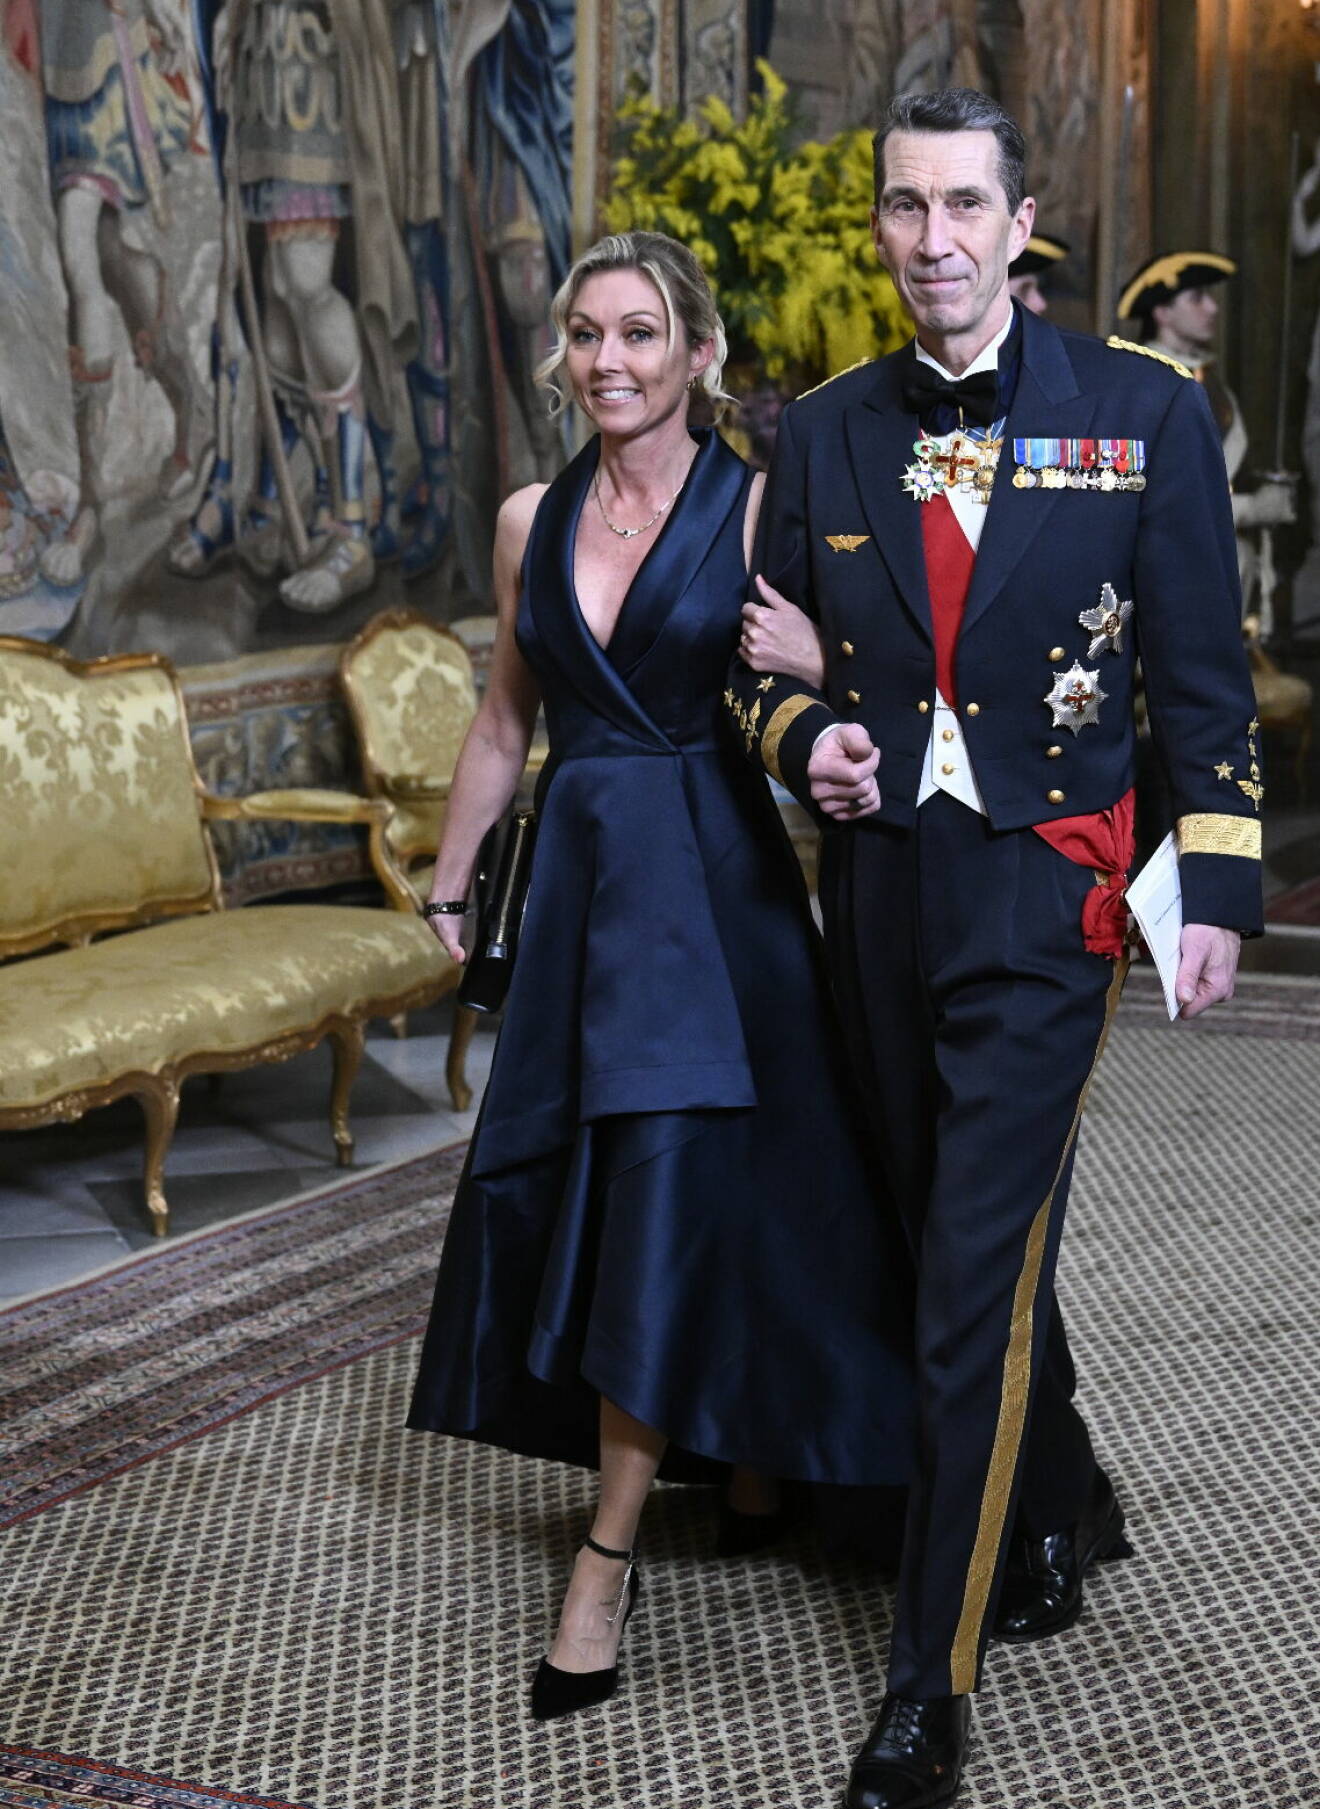 ÖB Micael Bydén på fest hos kungen med sin fästmö Linda Staaf